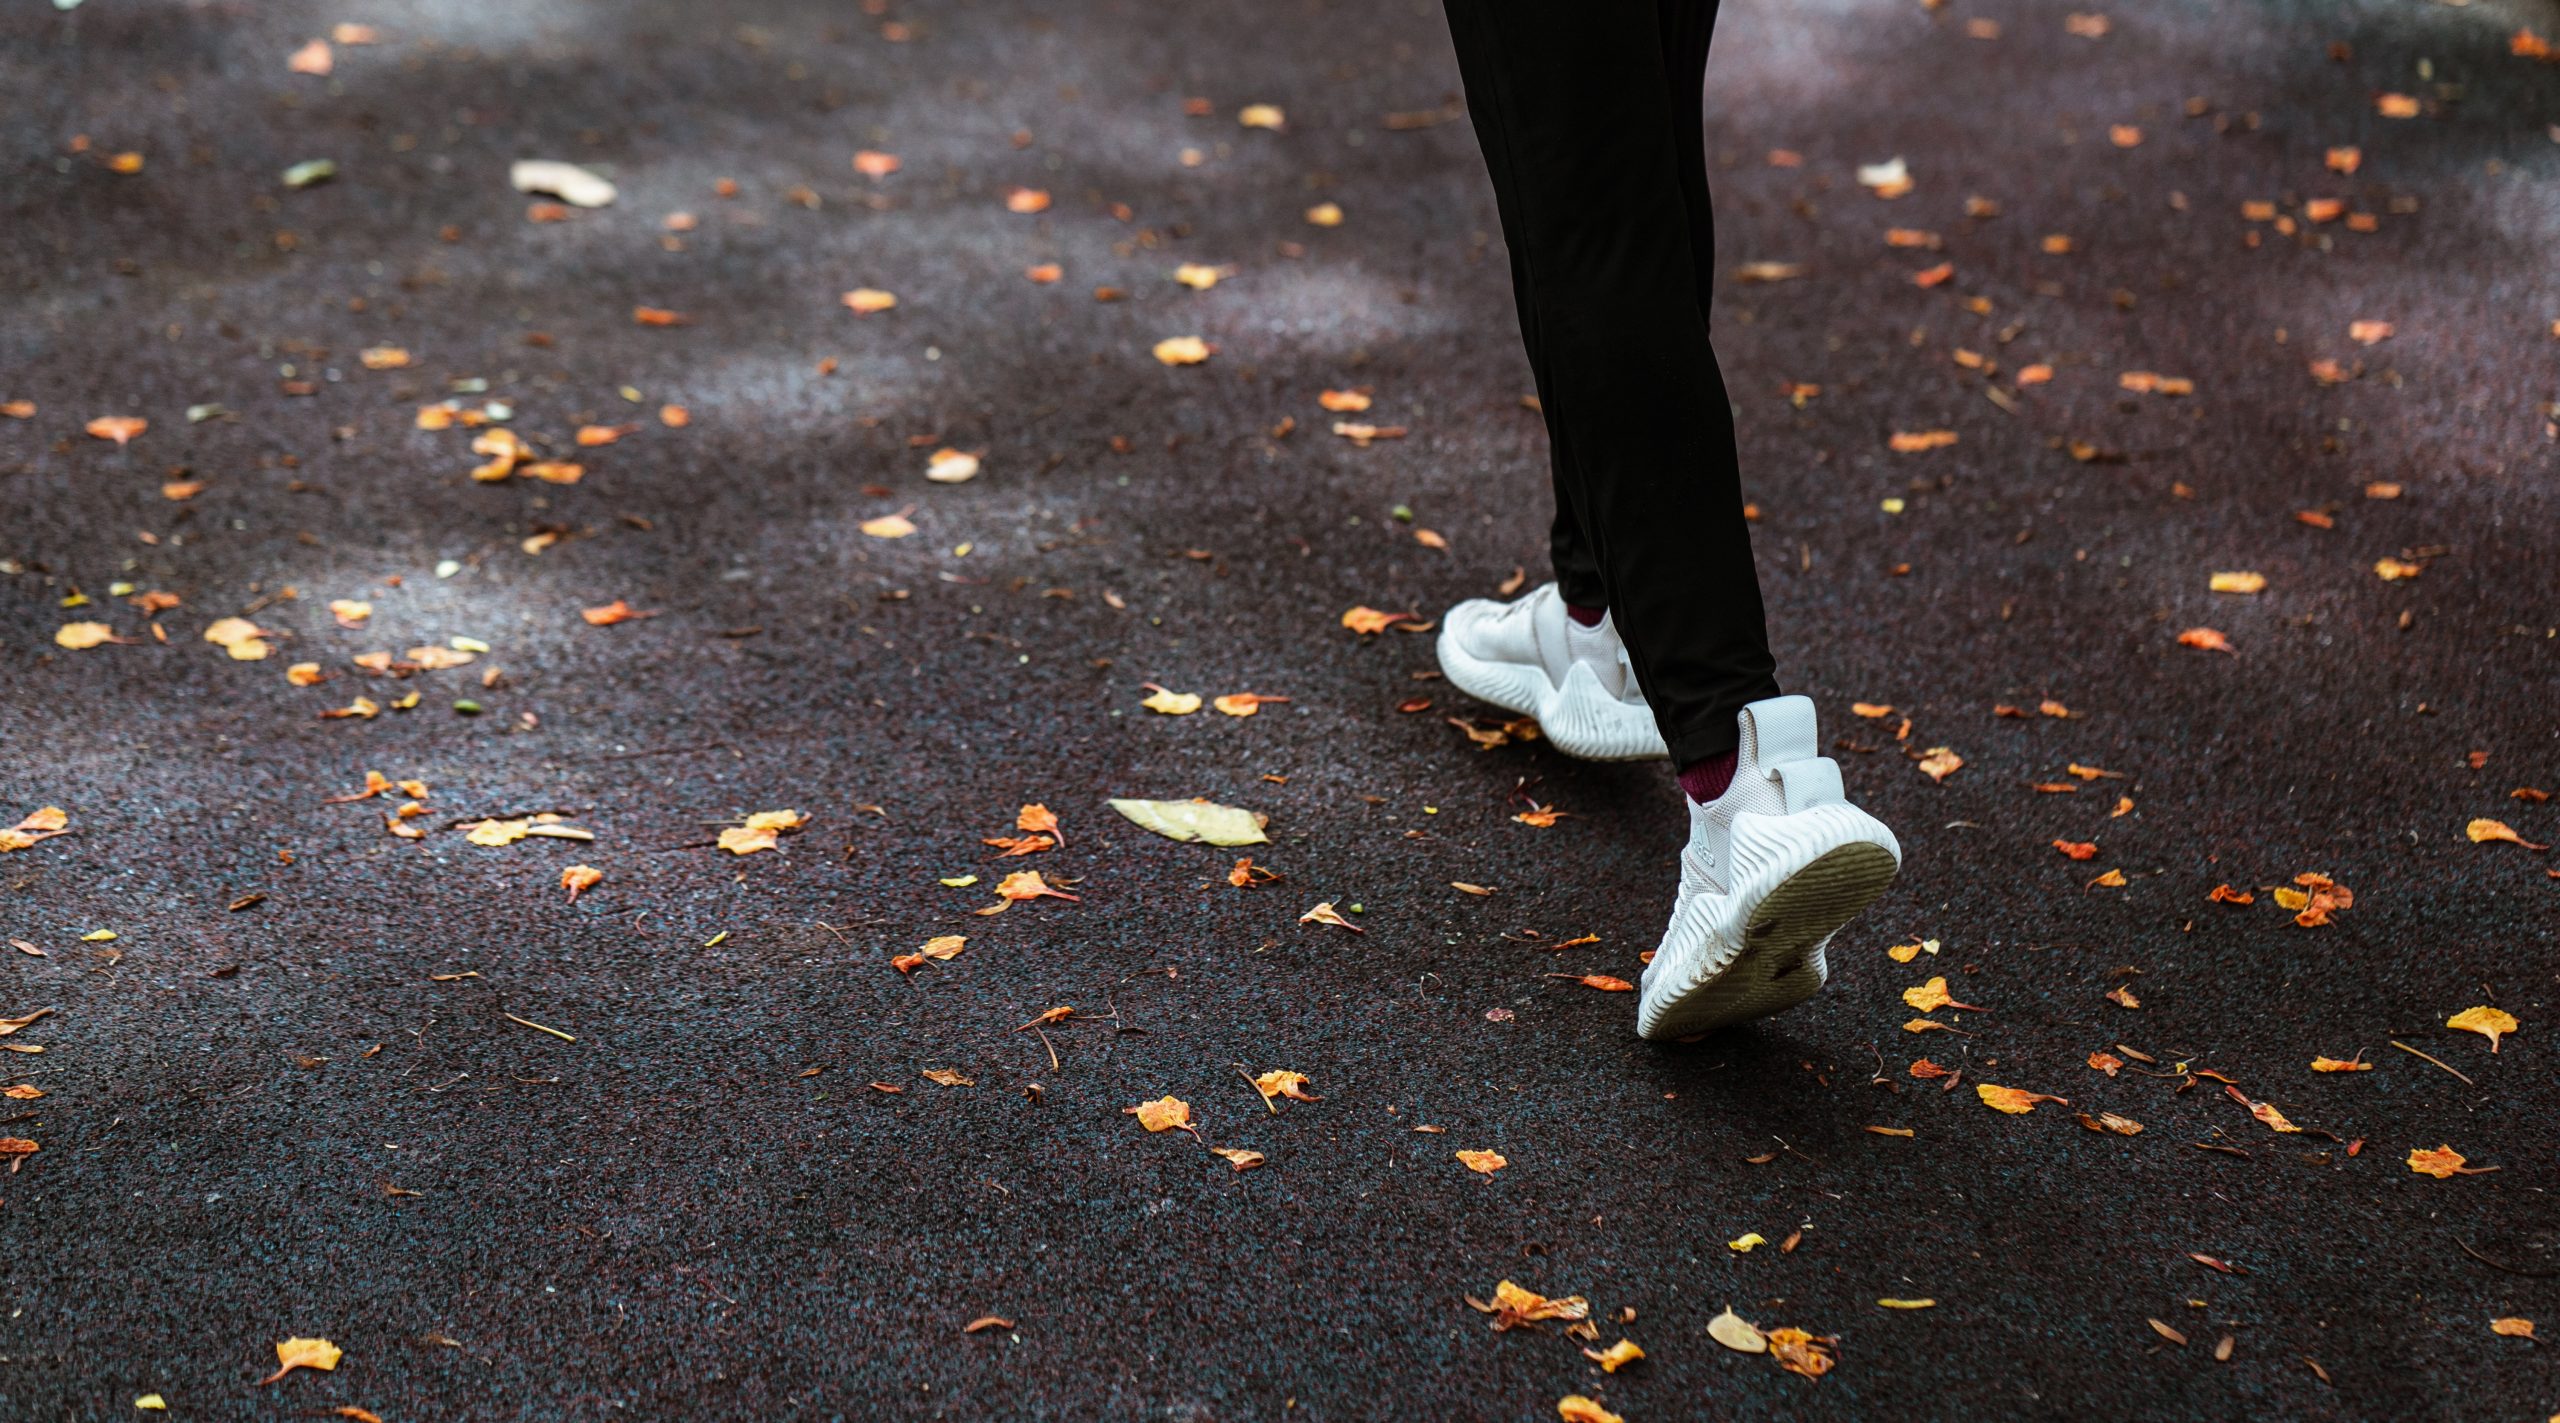 Исследователи рассказали, какая тренировка способствует долголетию: ходьба или бег?